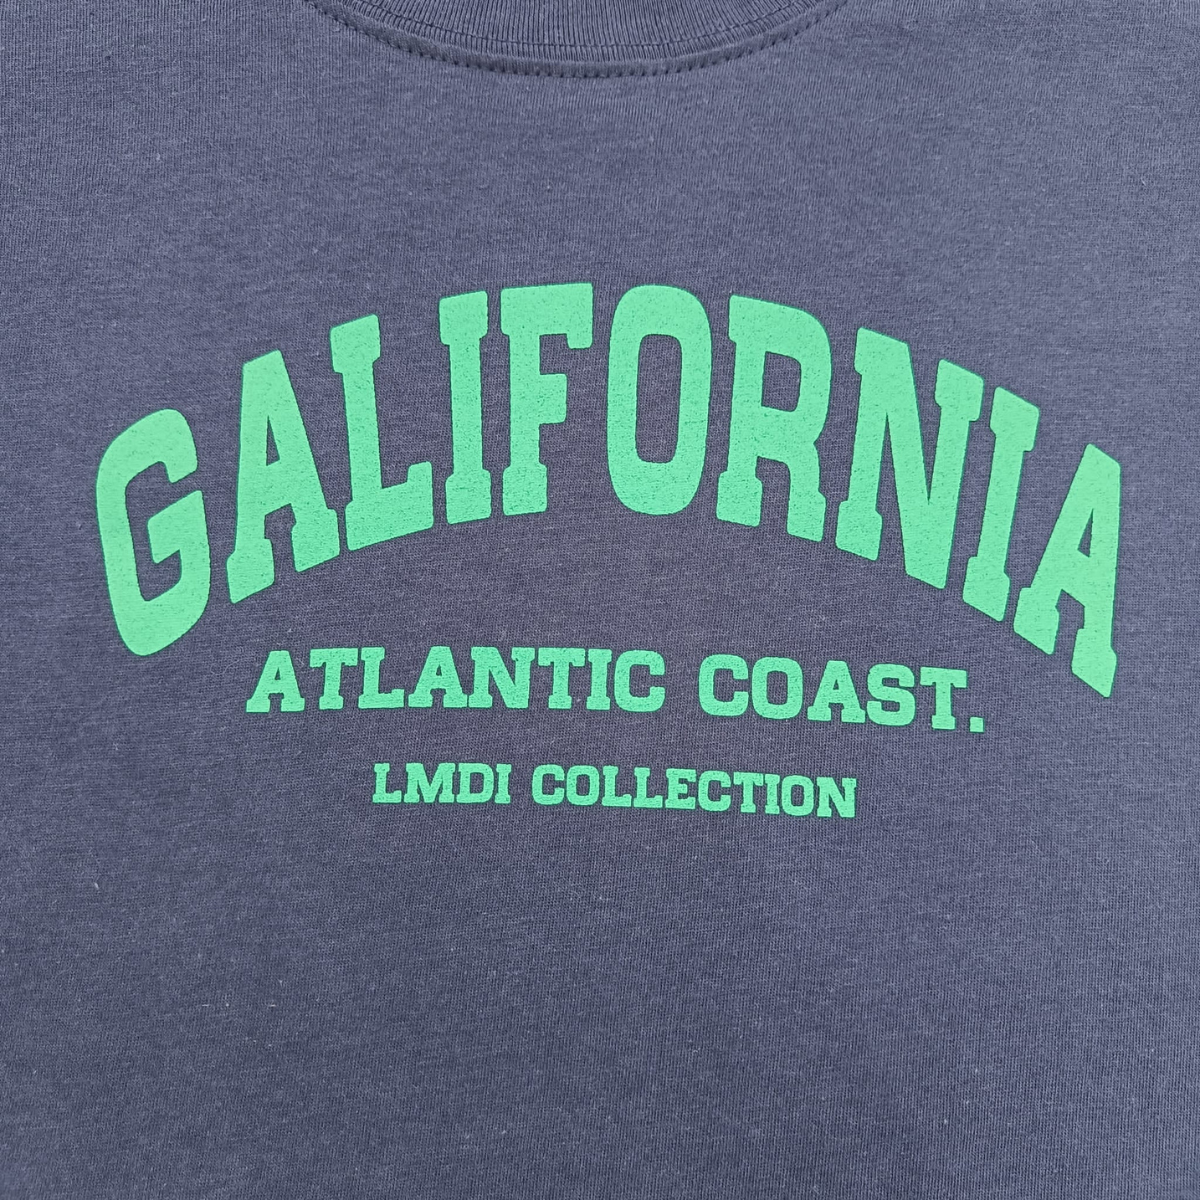 Camiseta Galifornia Atlantic Coast LMDI Collection KIDS marino/verde agua